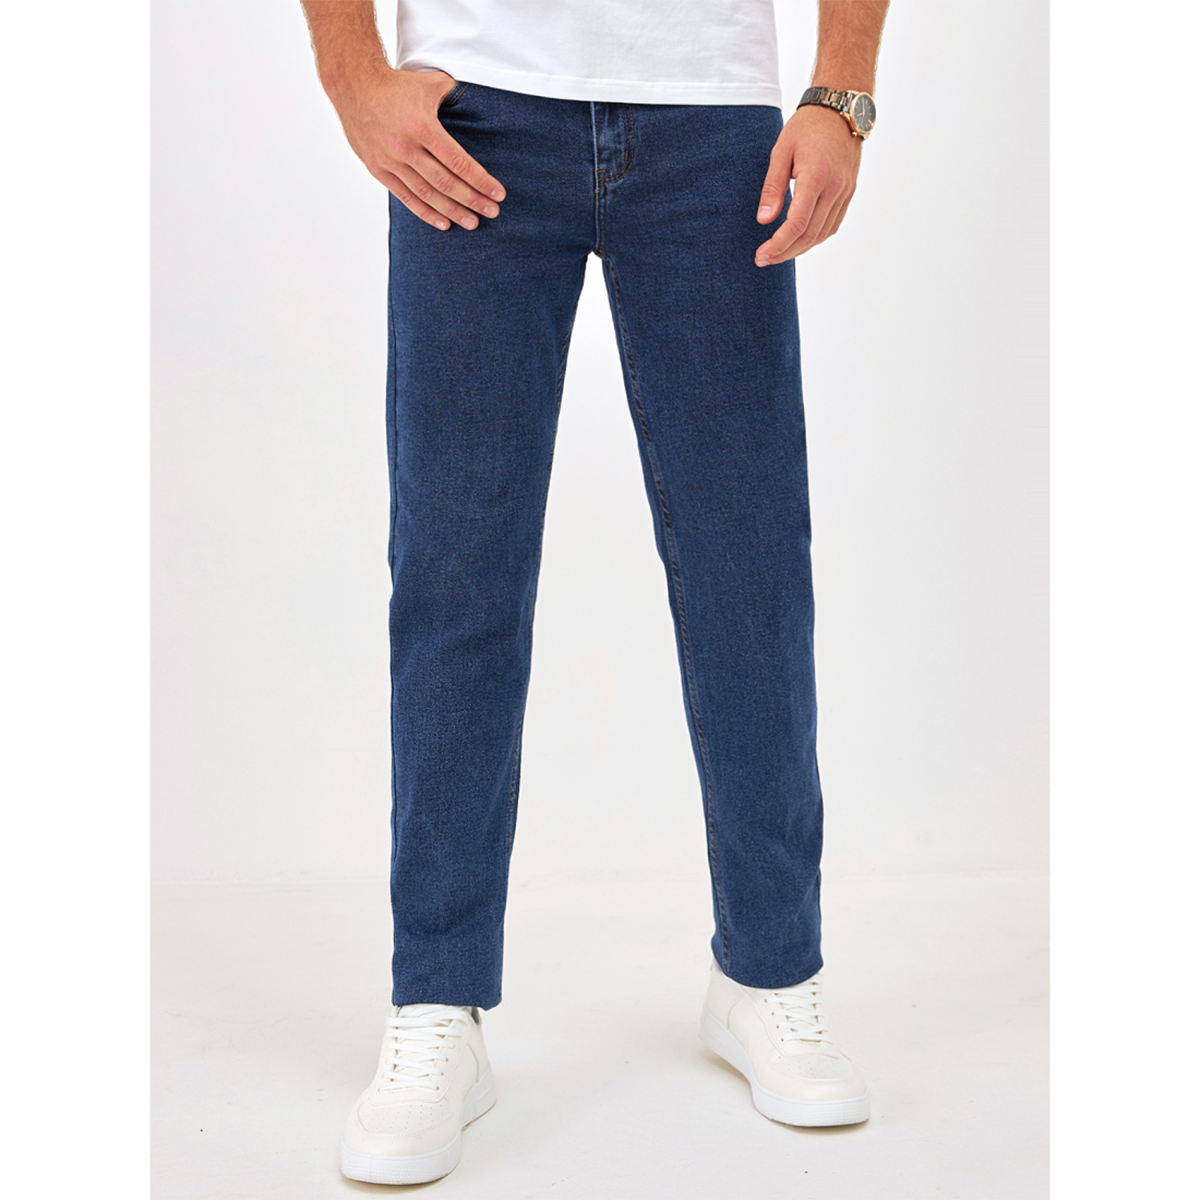 Джинсы мужские Barouz Jeans classic синие 31